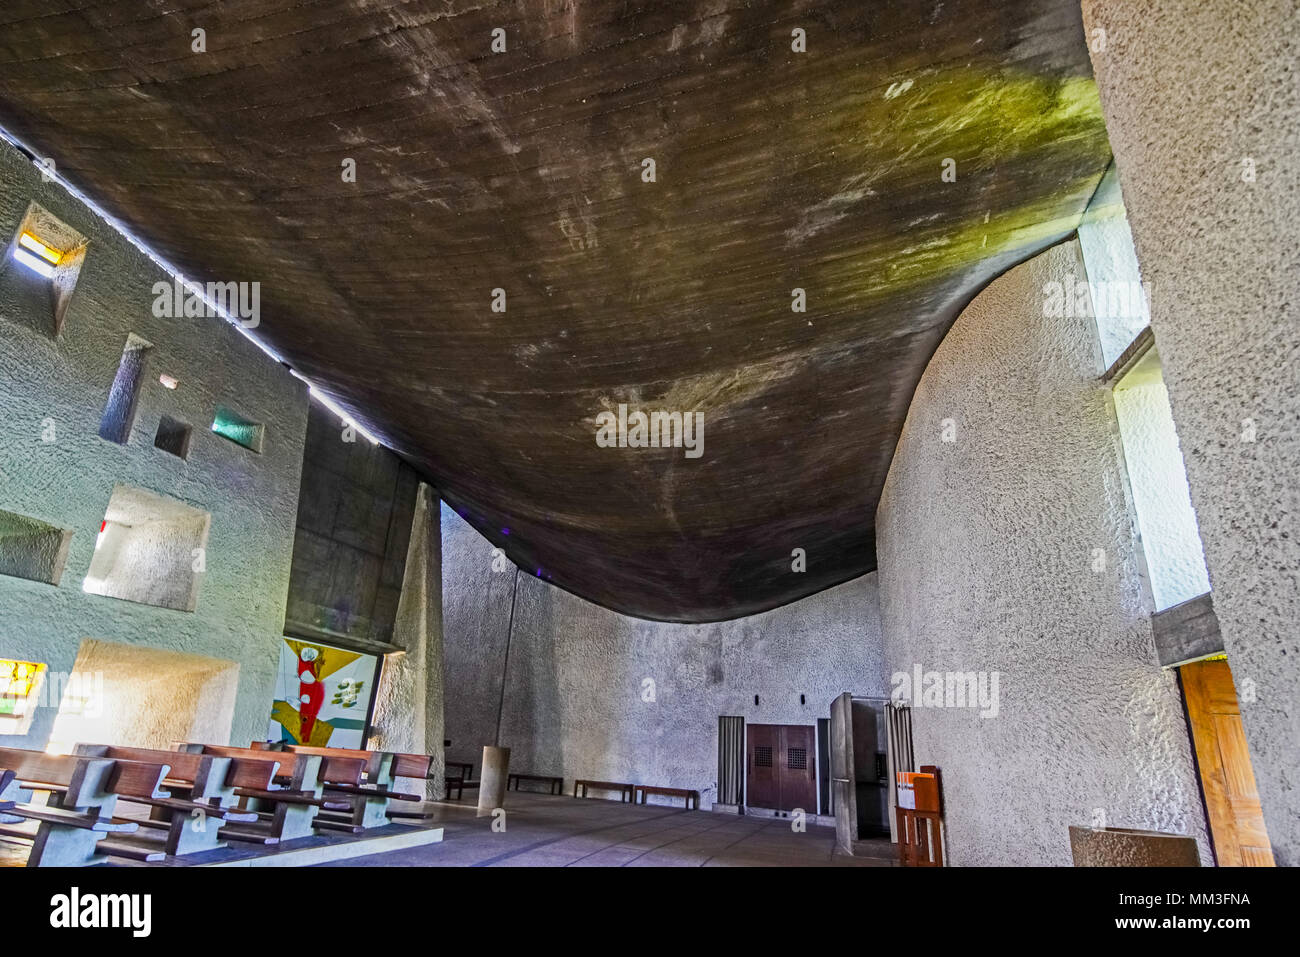 Dentro de la icónica Capilla de Ronchamp diseñada por el arquitecto suizo-francés Le Corbusier, Francia. Foto de stock